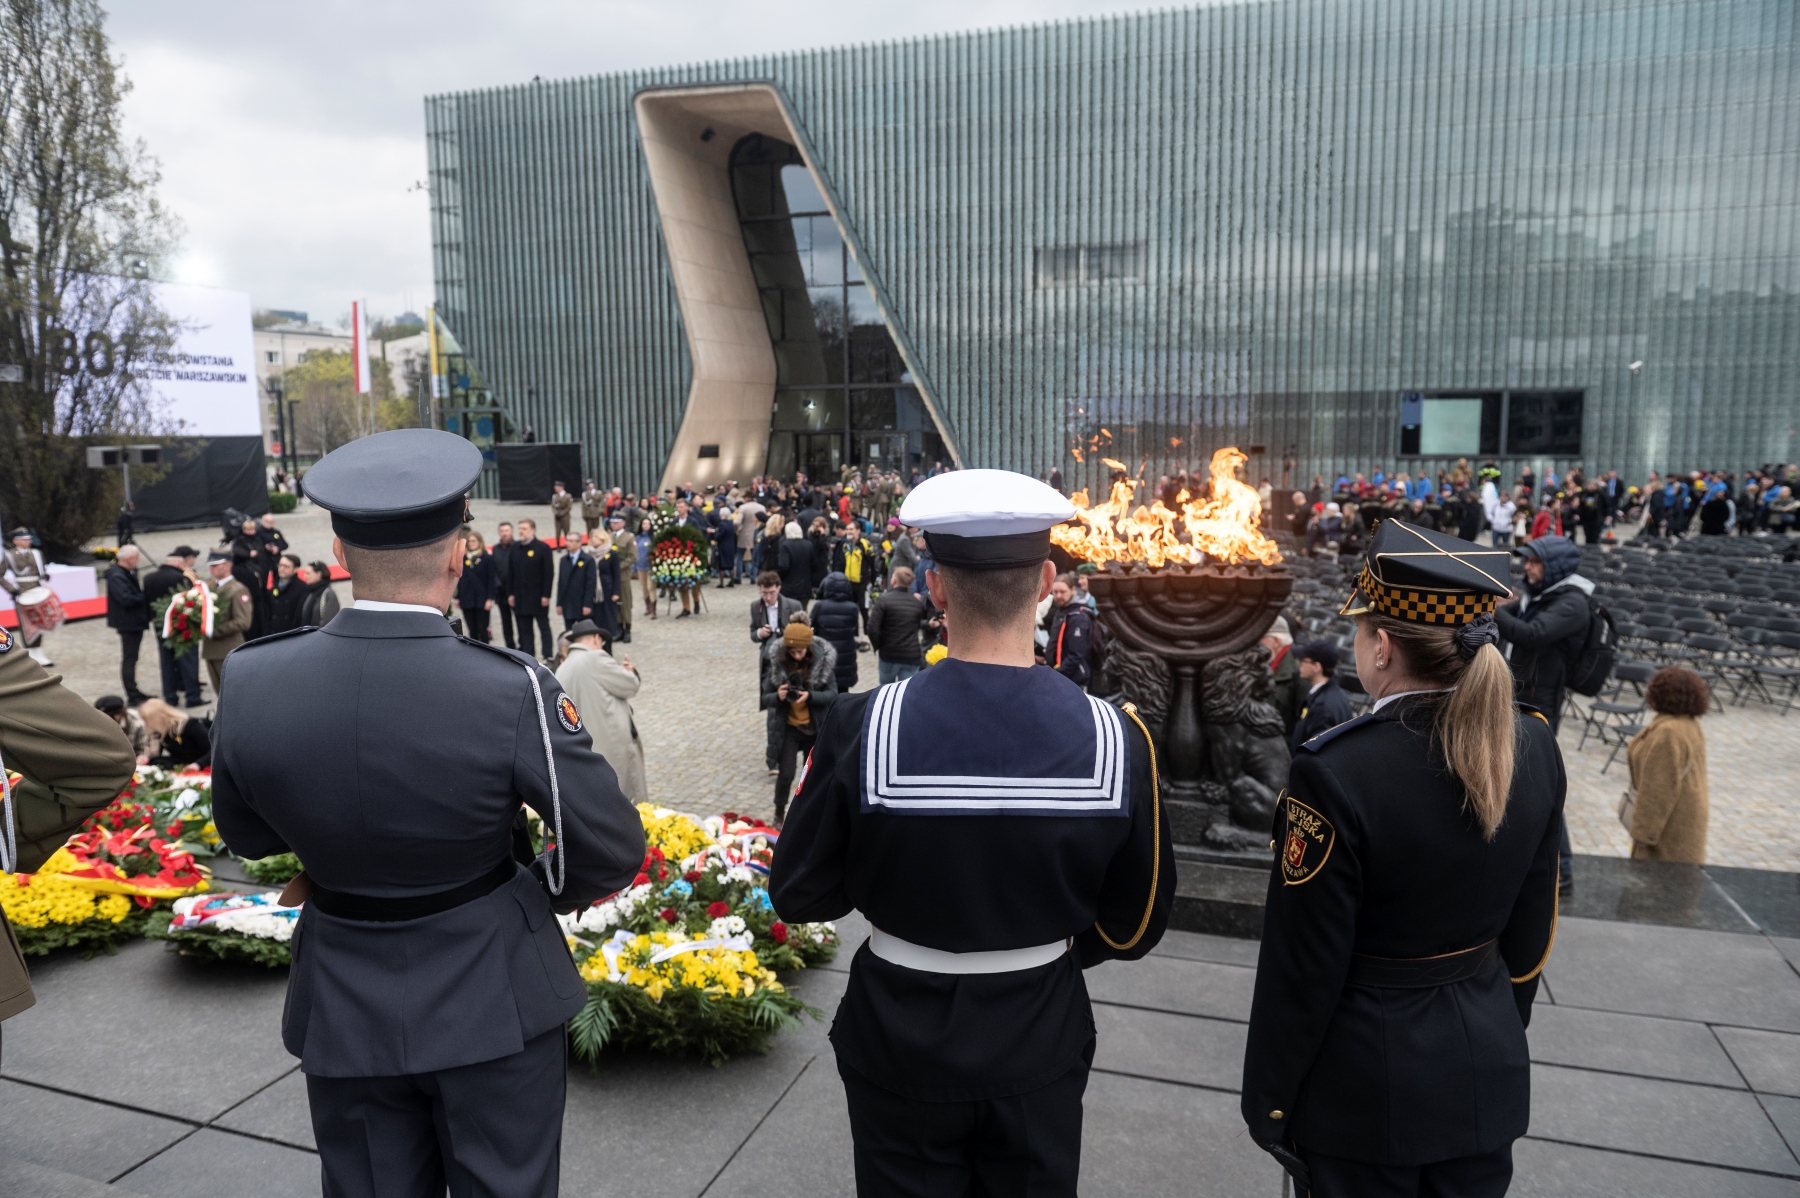 Straż złożona z trzech osób w mundurach stoi przy pomniku Bohaterów Getta. Jest zwrócona w kierunku budynku Muzeum POLIN. Do pomnika wędrują delegacje z kwiatami.